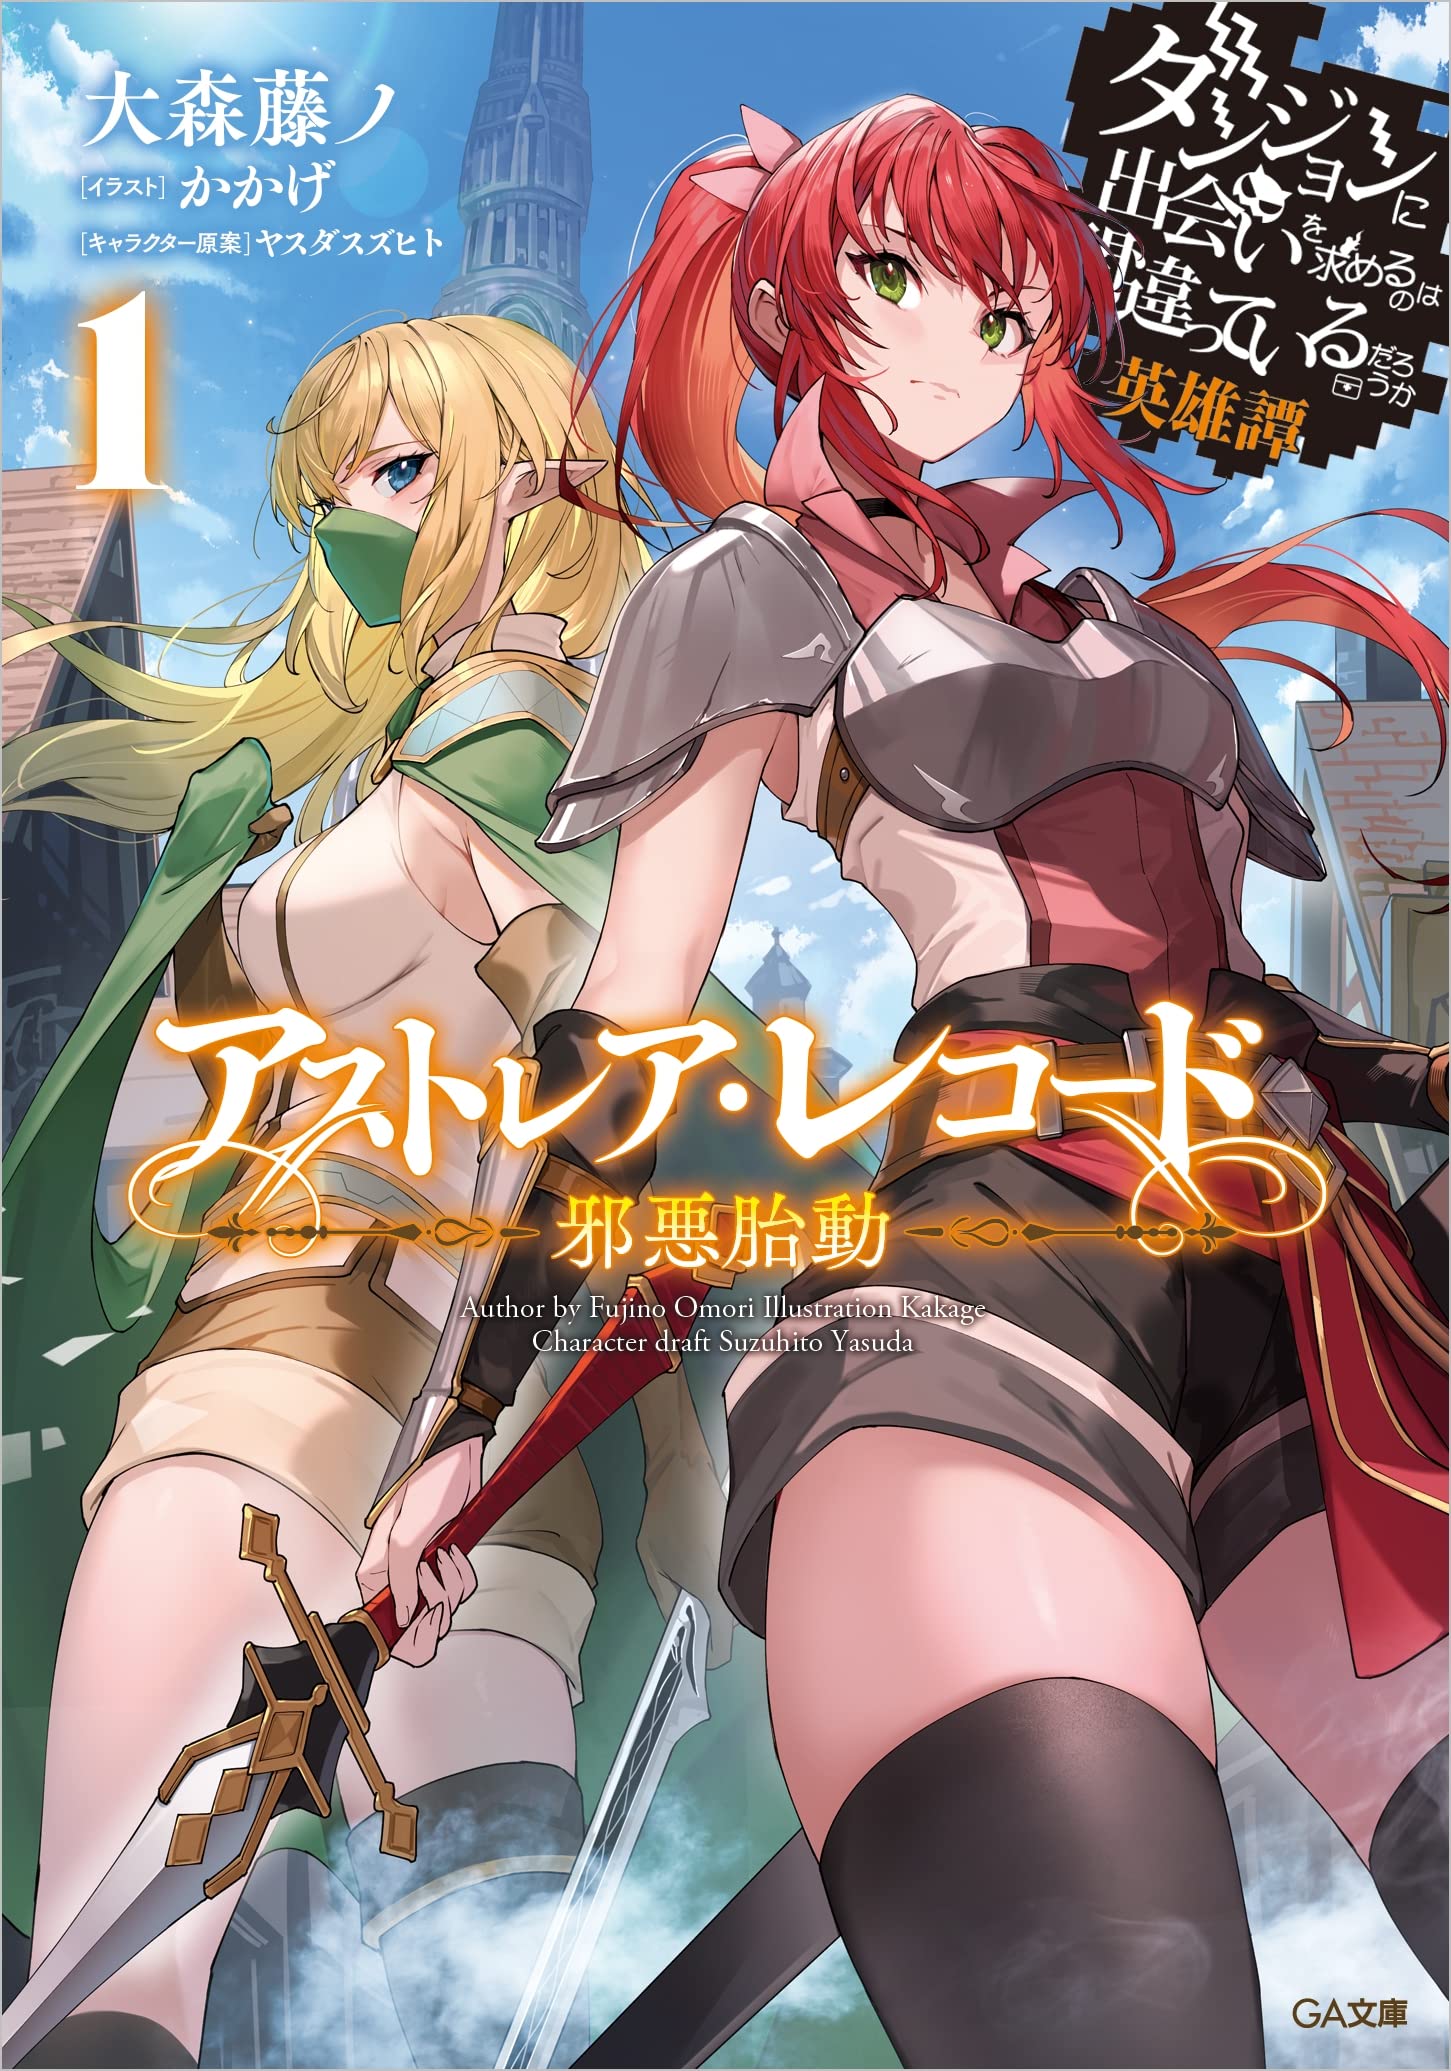 Danmachi, Chapter 1 - Danmachi Manga Online  Dungeon ni deai, Dungeon ni,  Danmachi anime